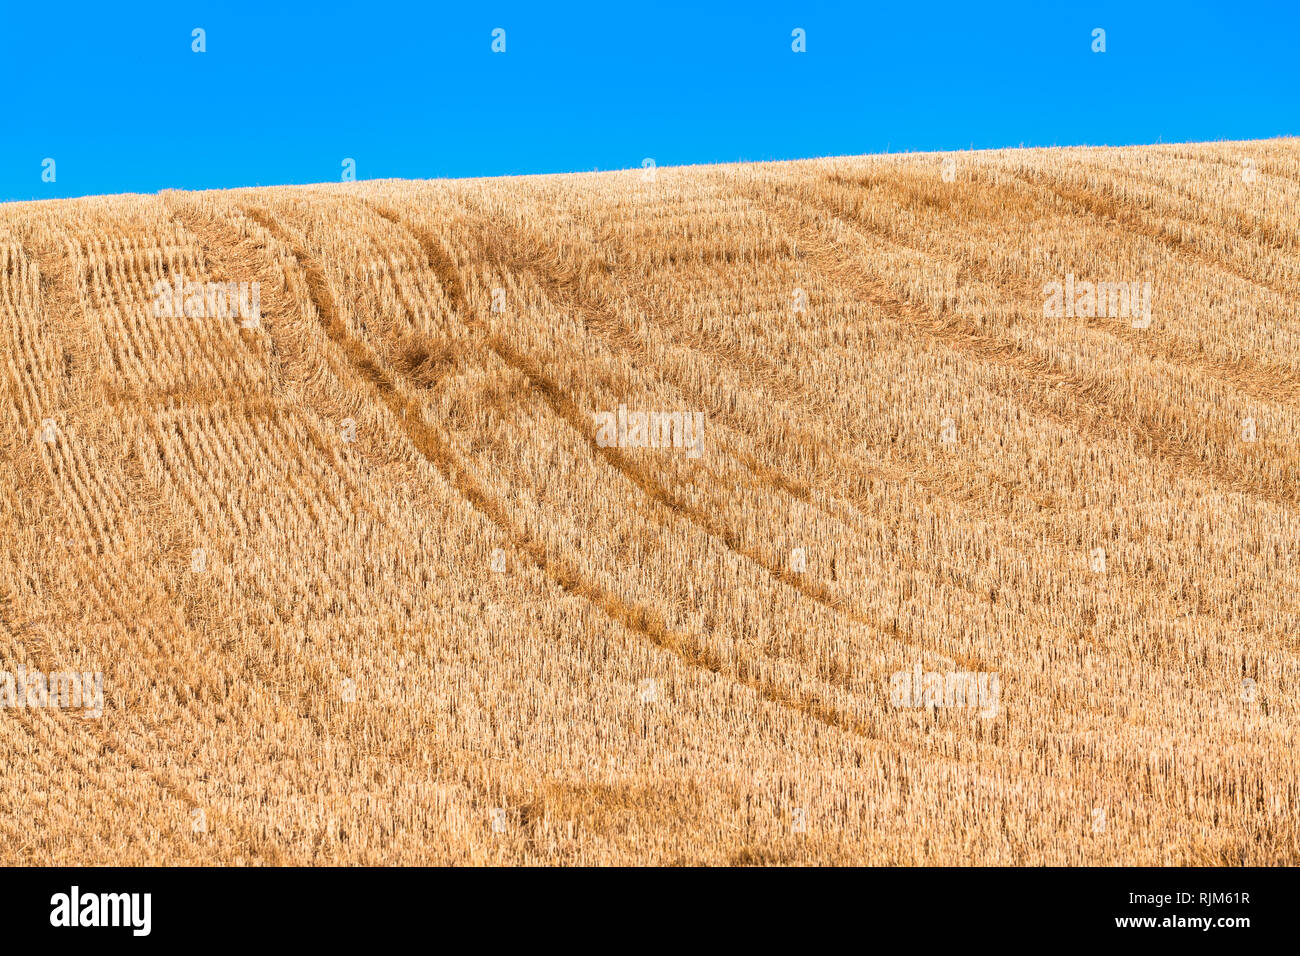 Golden hügeligen Gebiet der geernteten Getreide, short cut Stoppeln, Fahrzeug Titel bergauf, blauer Himmel (Kopie) Stockfoto